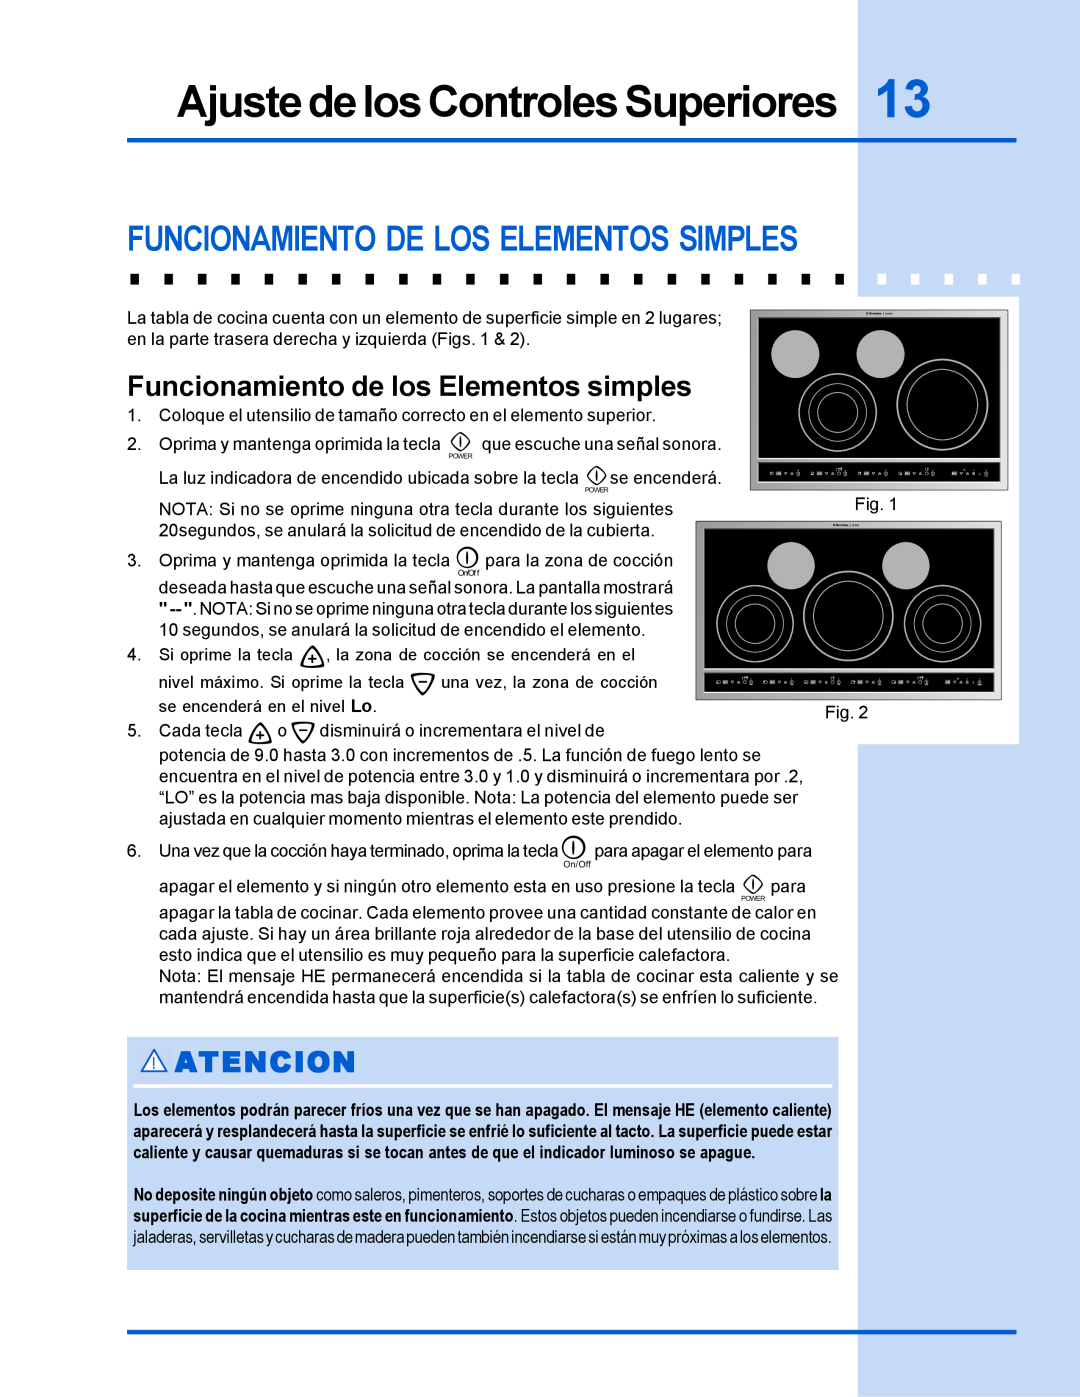 Electrolux 318 200 635 manual Funcionamiento De Los Elementos Simples, Ajuste de los Controles Superiores, Atencion 